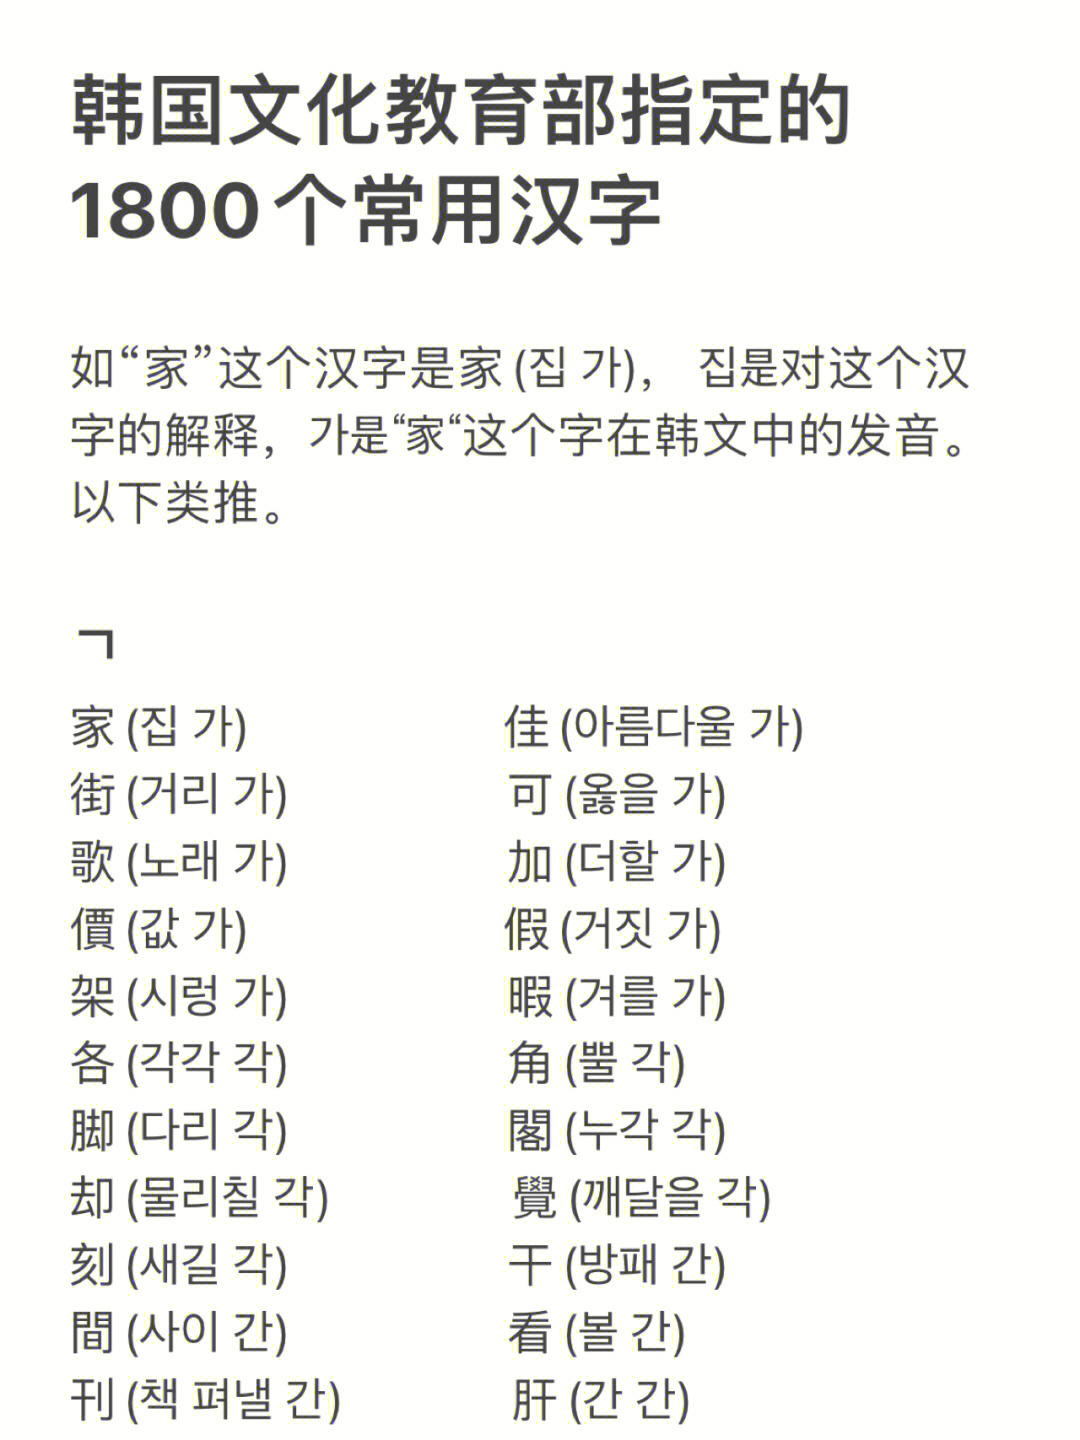 韩国文化教育部指定的1800个常用汉字1